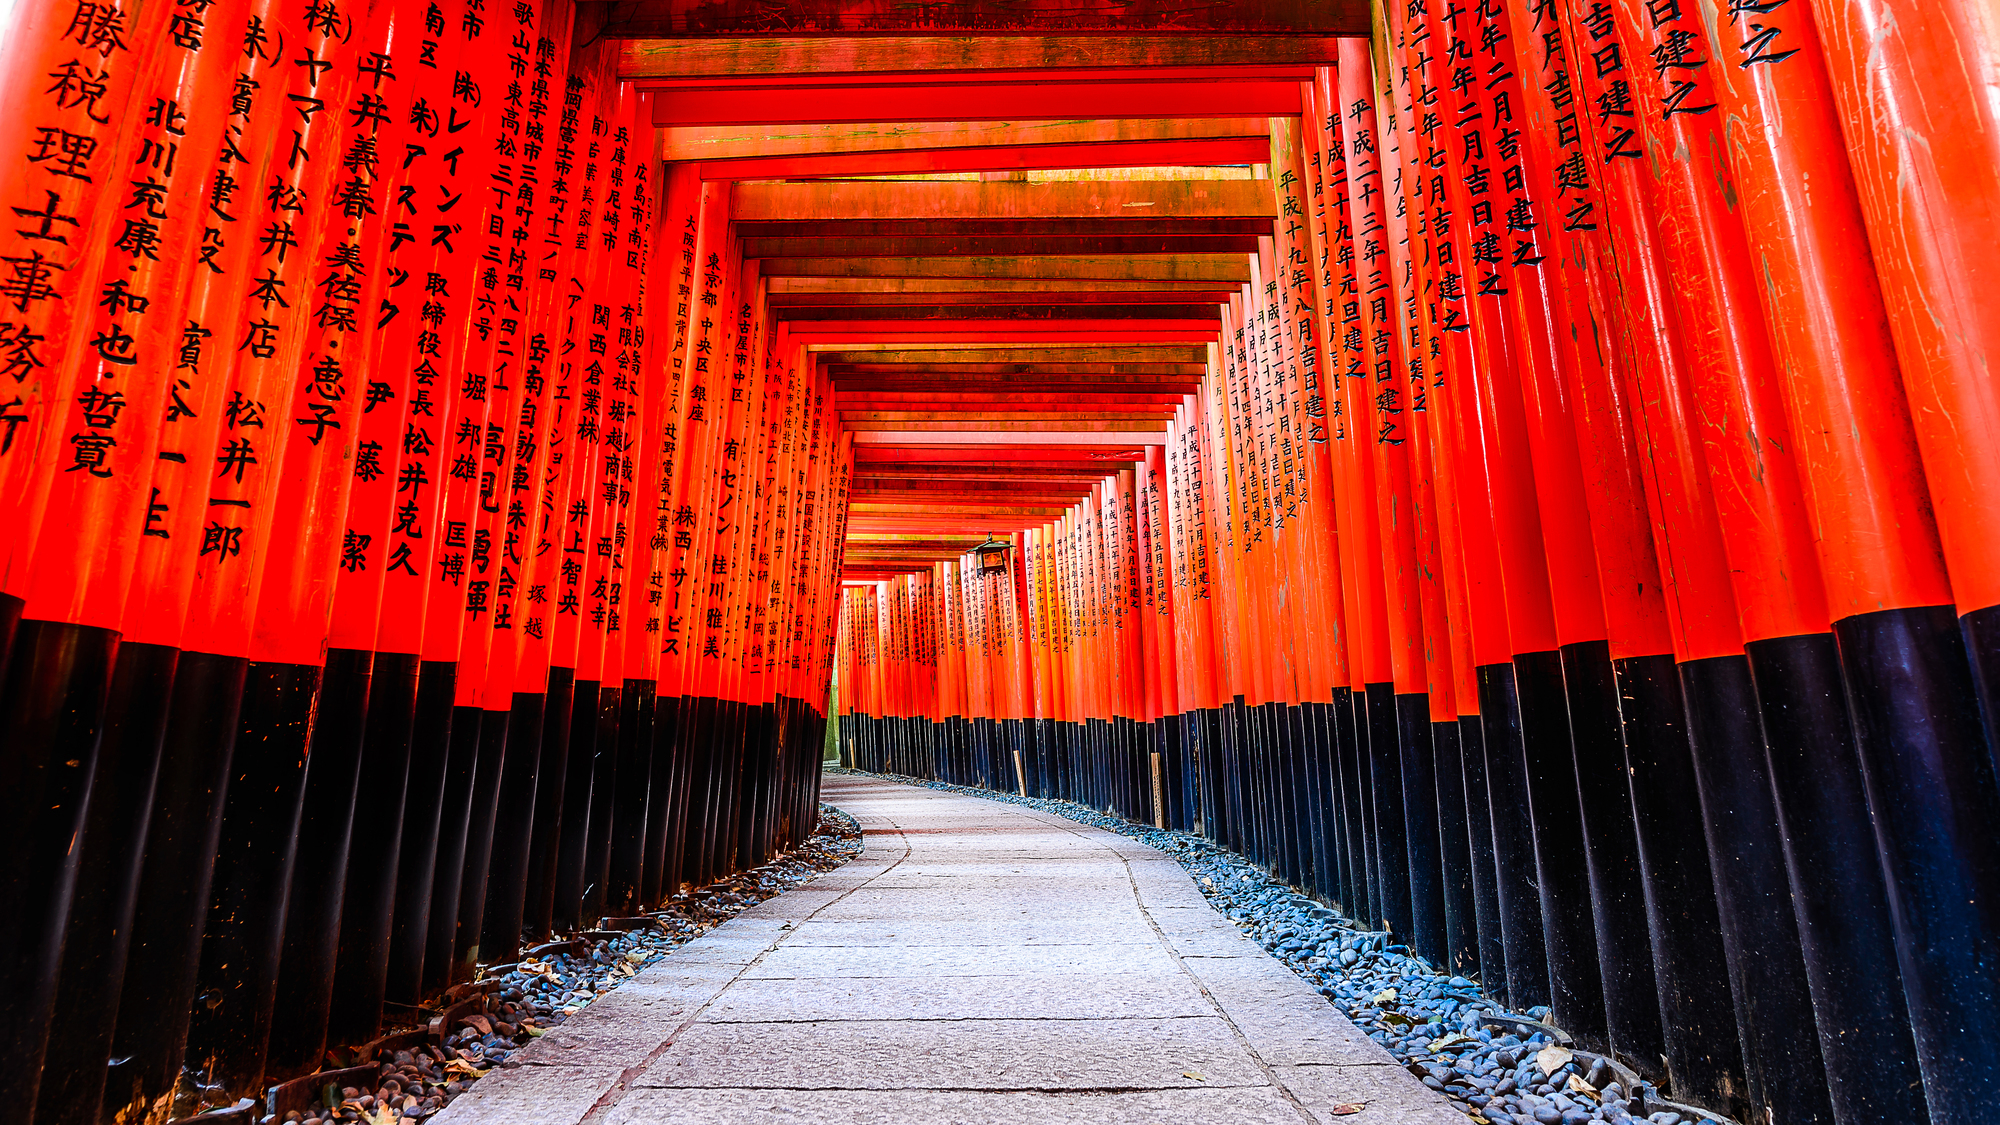 週末ひとり旅 たまにはちょっと贅沢に 京都を満喫できるおすすめ観光スポット 宿泊先 後払いホテル予約サイト Minute